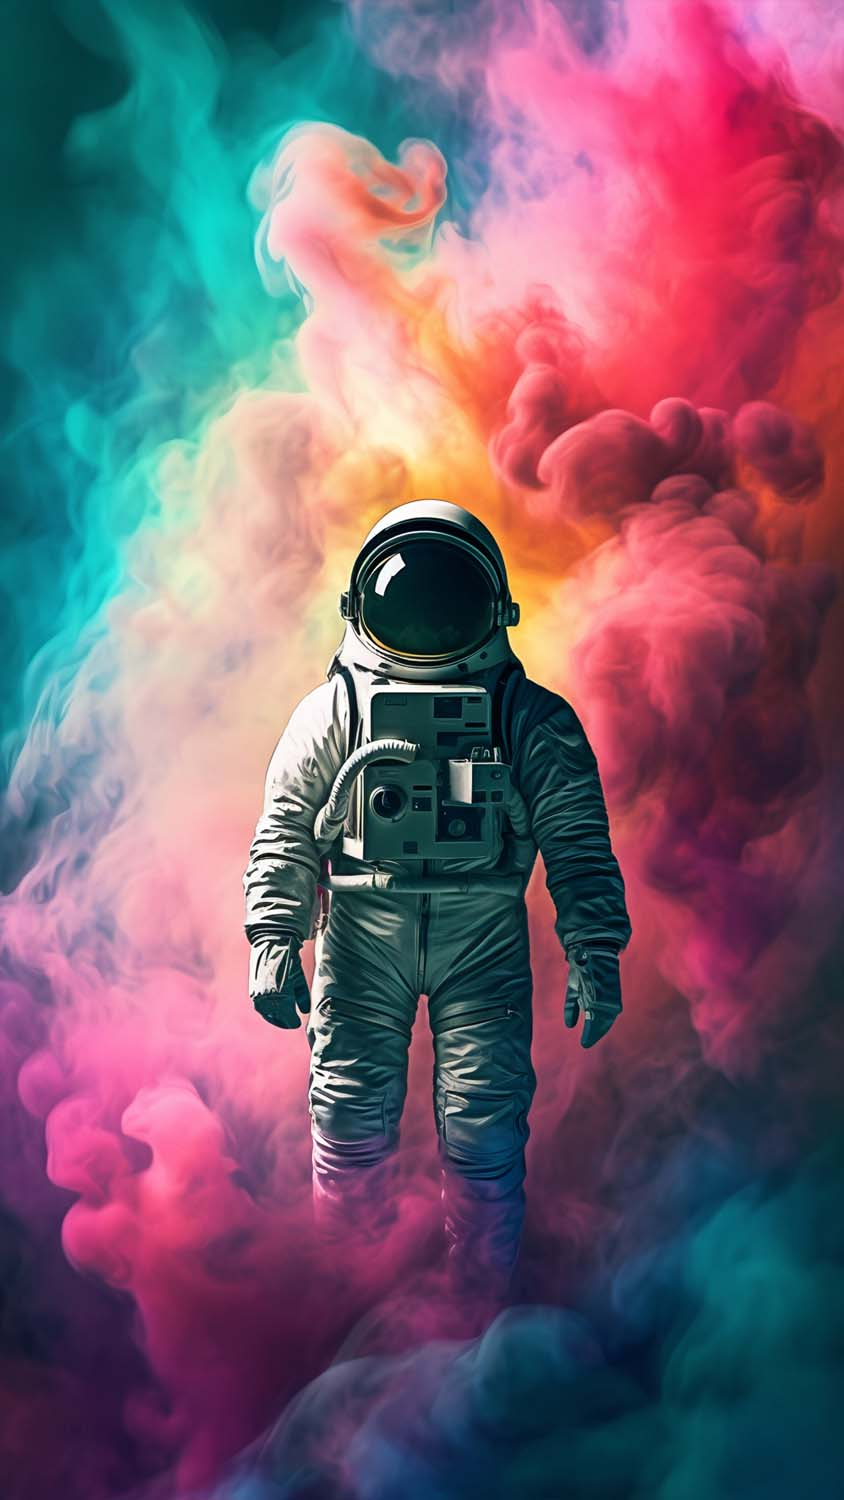 Astronaut Art iPhone Wallpaper 4K  iPhone Wallpapers